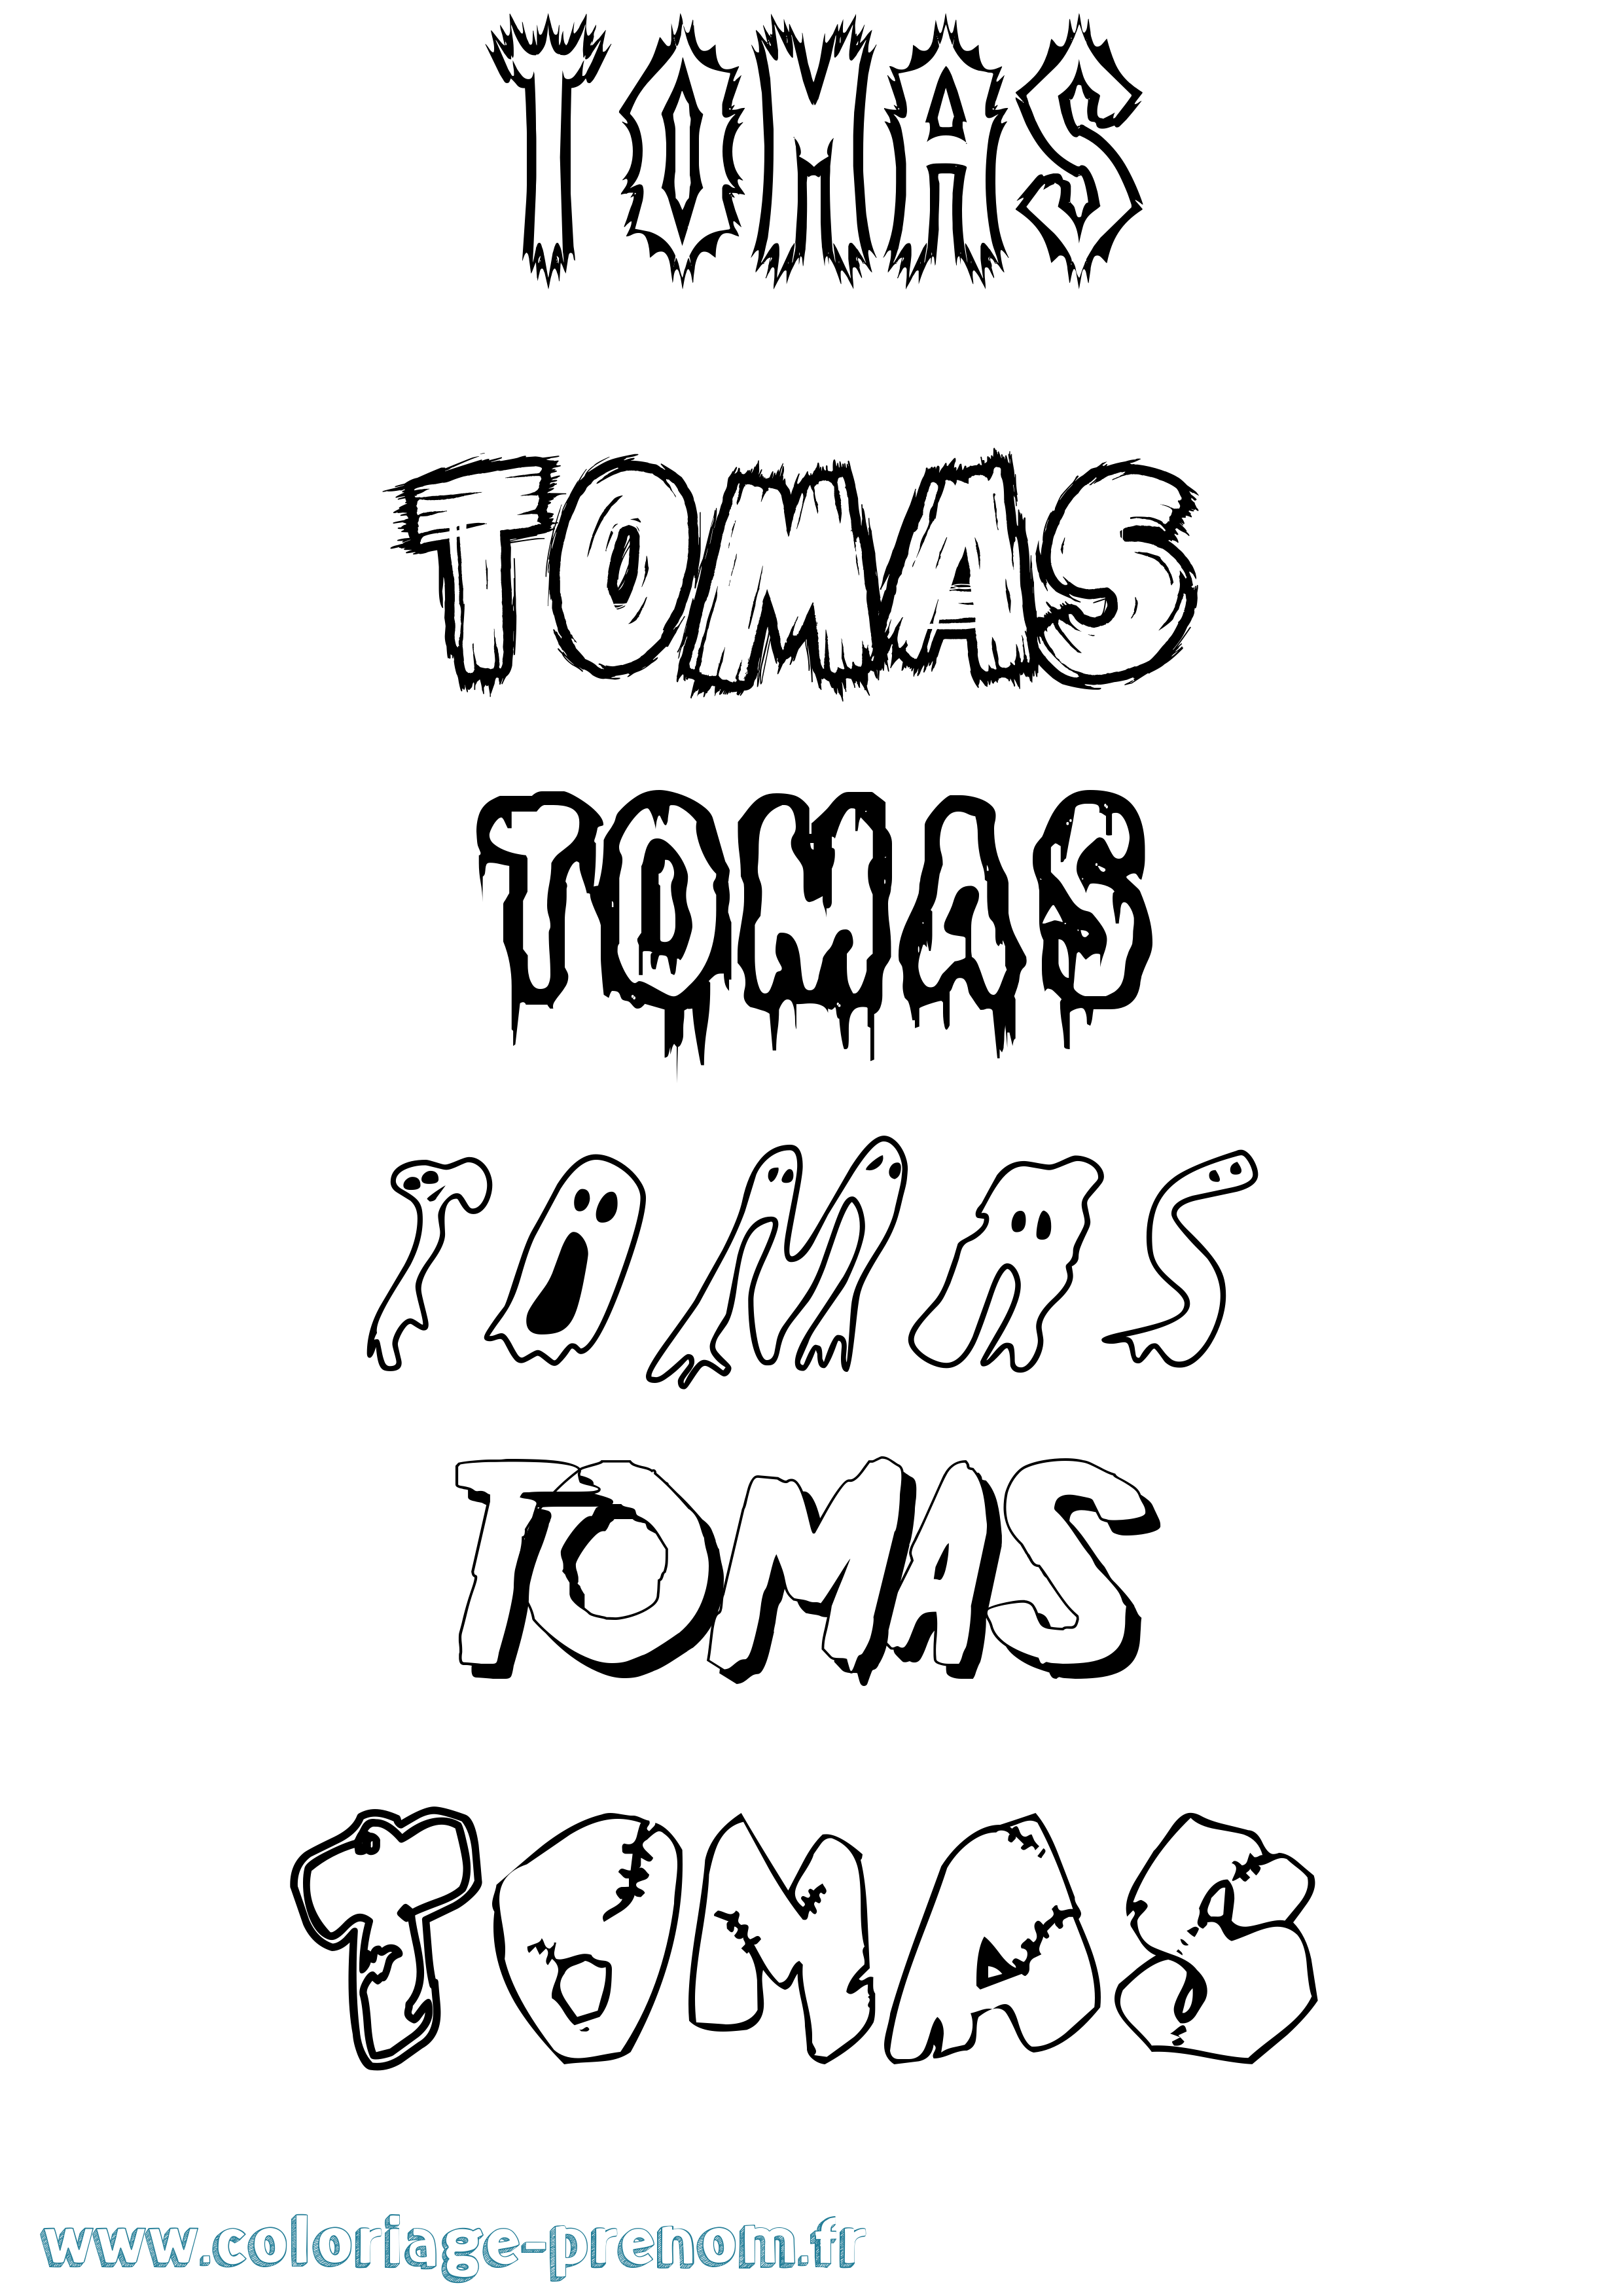 Coloriage prénom Tomas Frisson